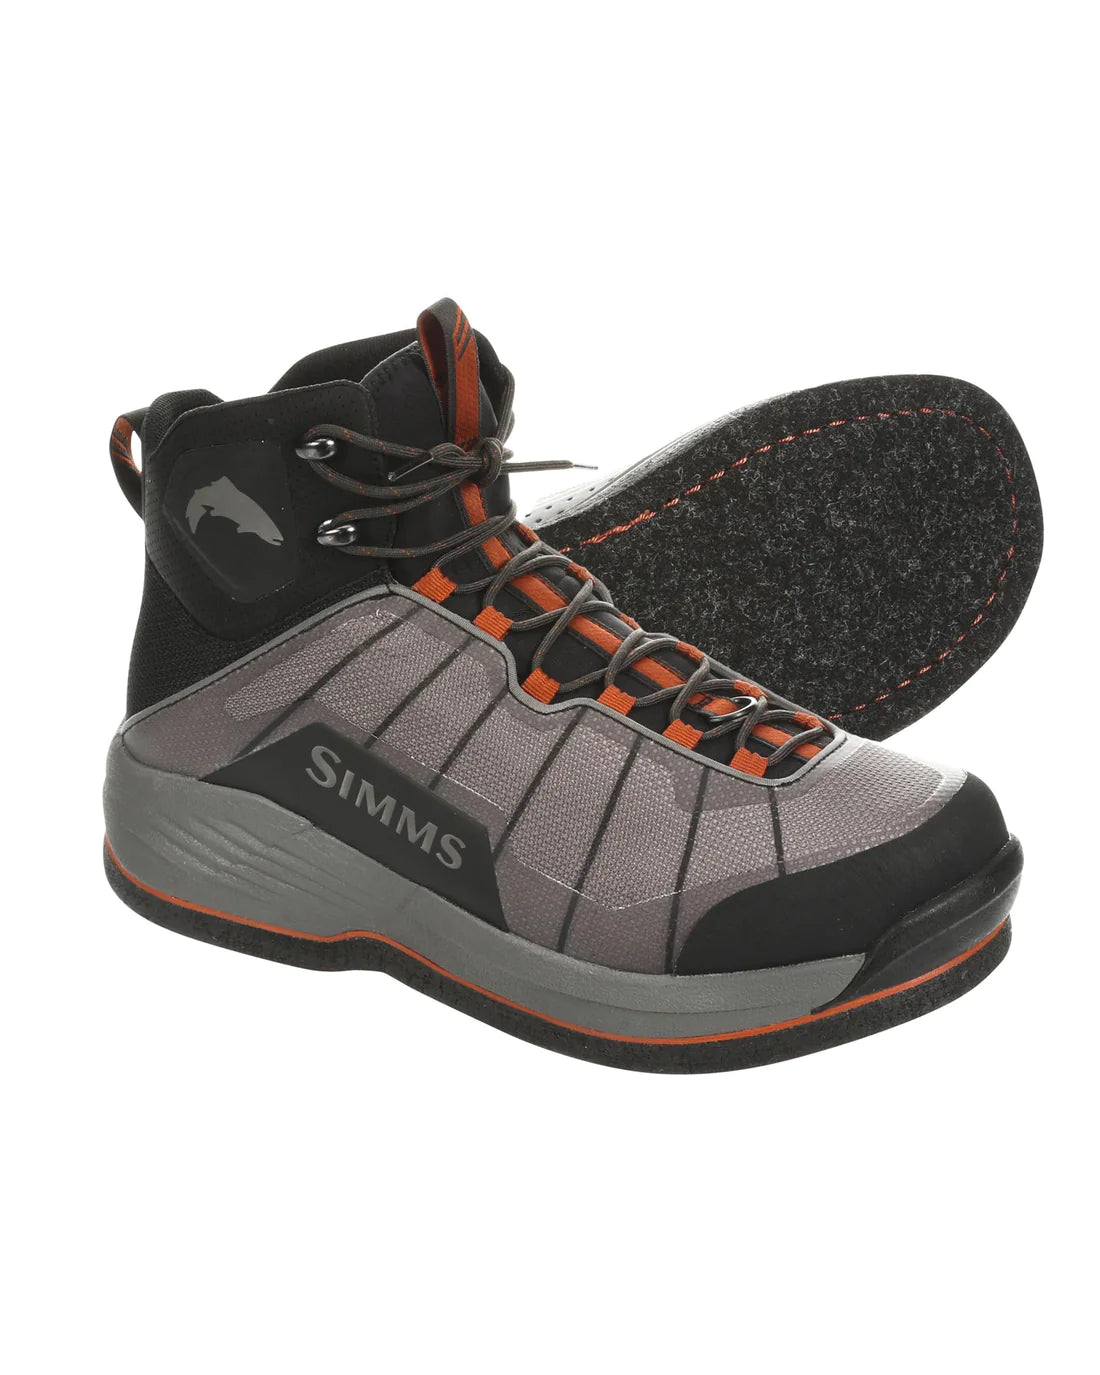 Simms Men's Flyweight® Wading Boot - Felt